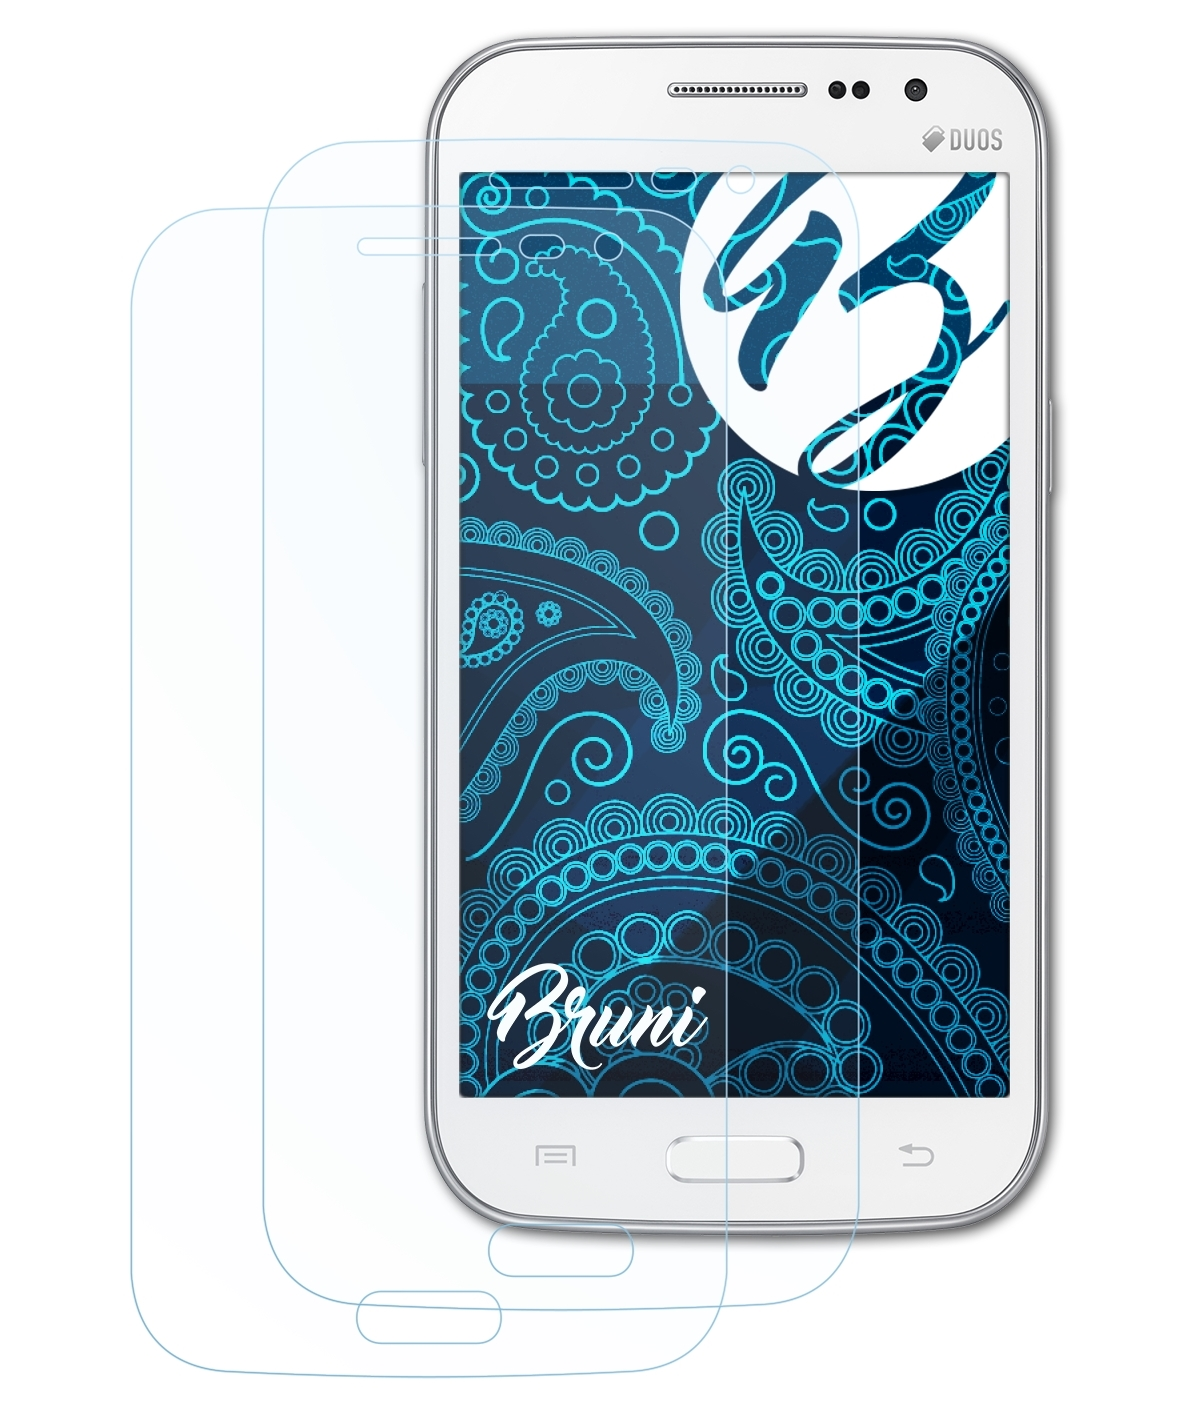 BRUNI 2x Basics-Clear (GT-i8552)) Schutzfolie(für Galaxy Win Samsung